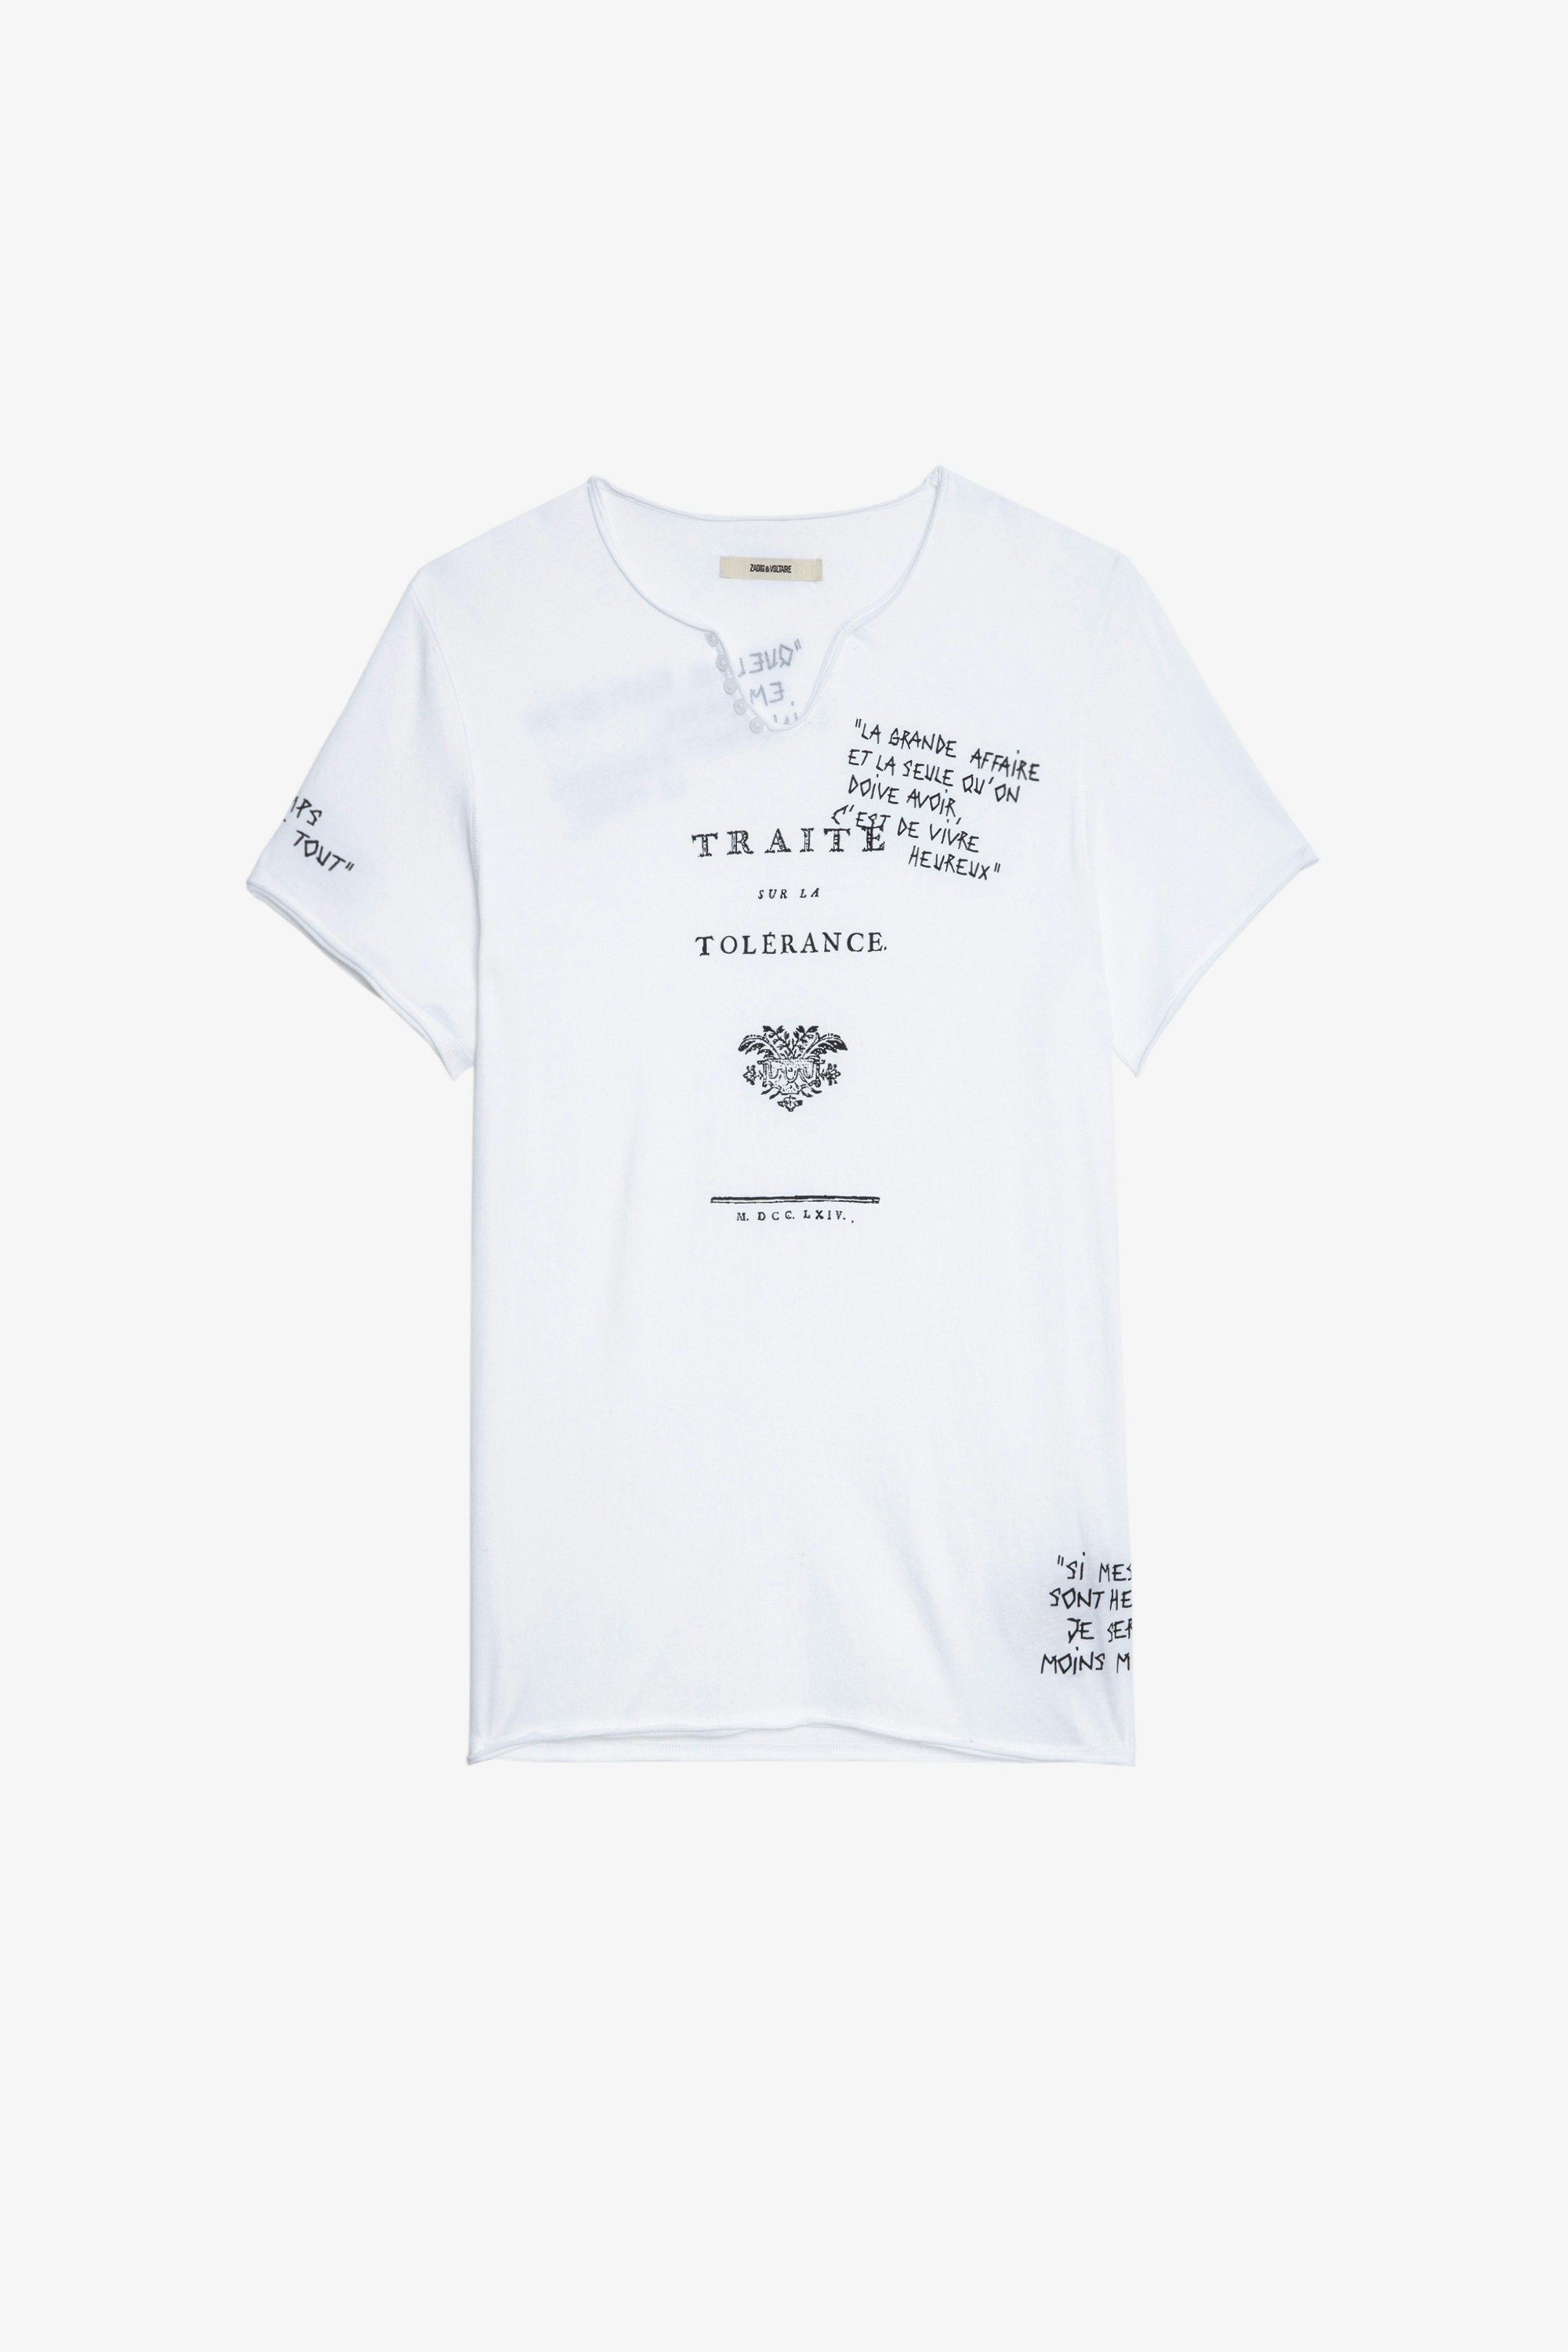 T-shirt Monastir T-shirt serafino in cotone bianco a maniche corte con citazioni Traité de la Tolérance uomo